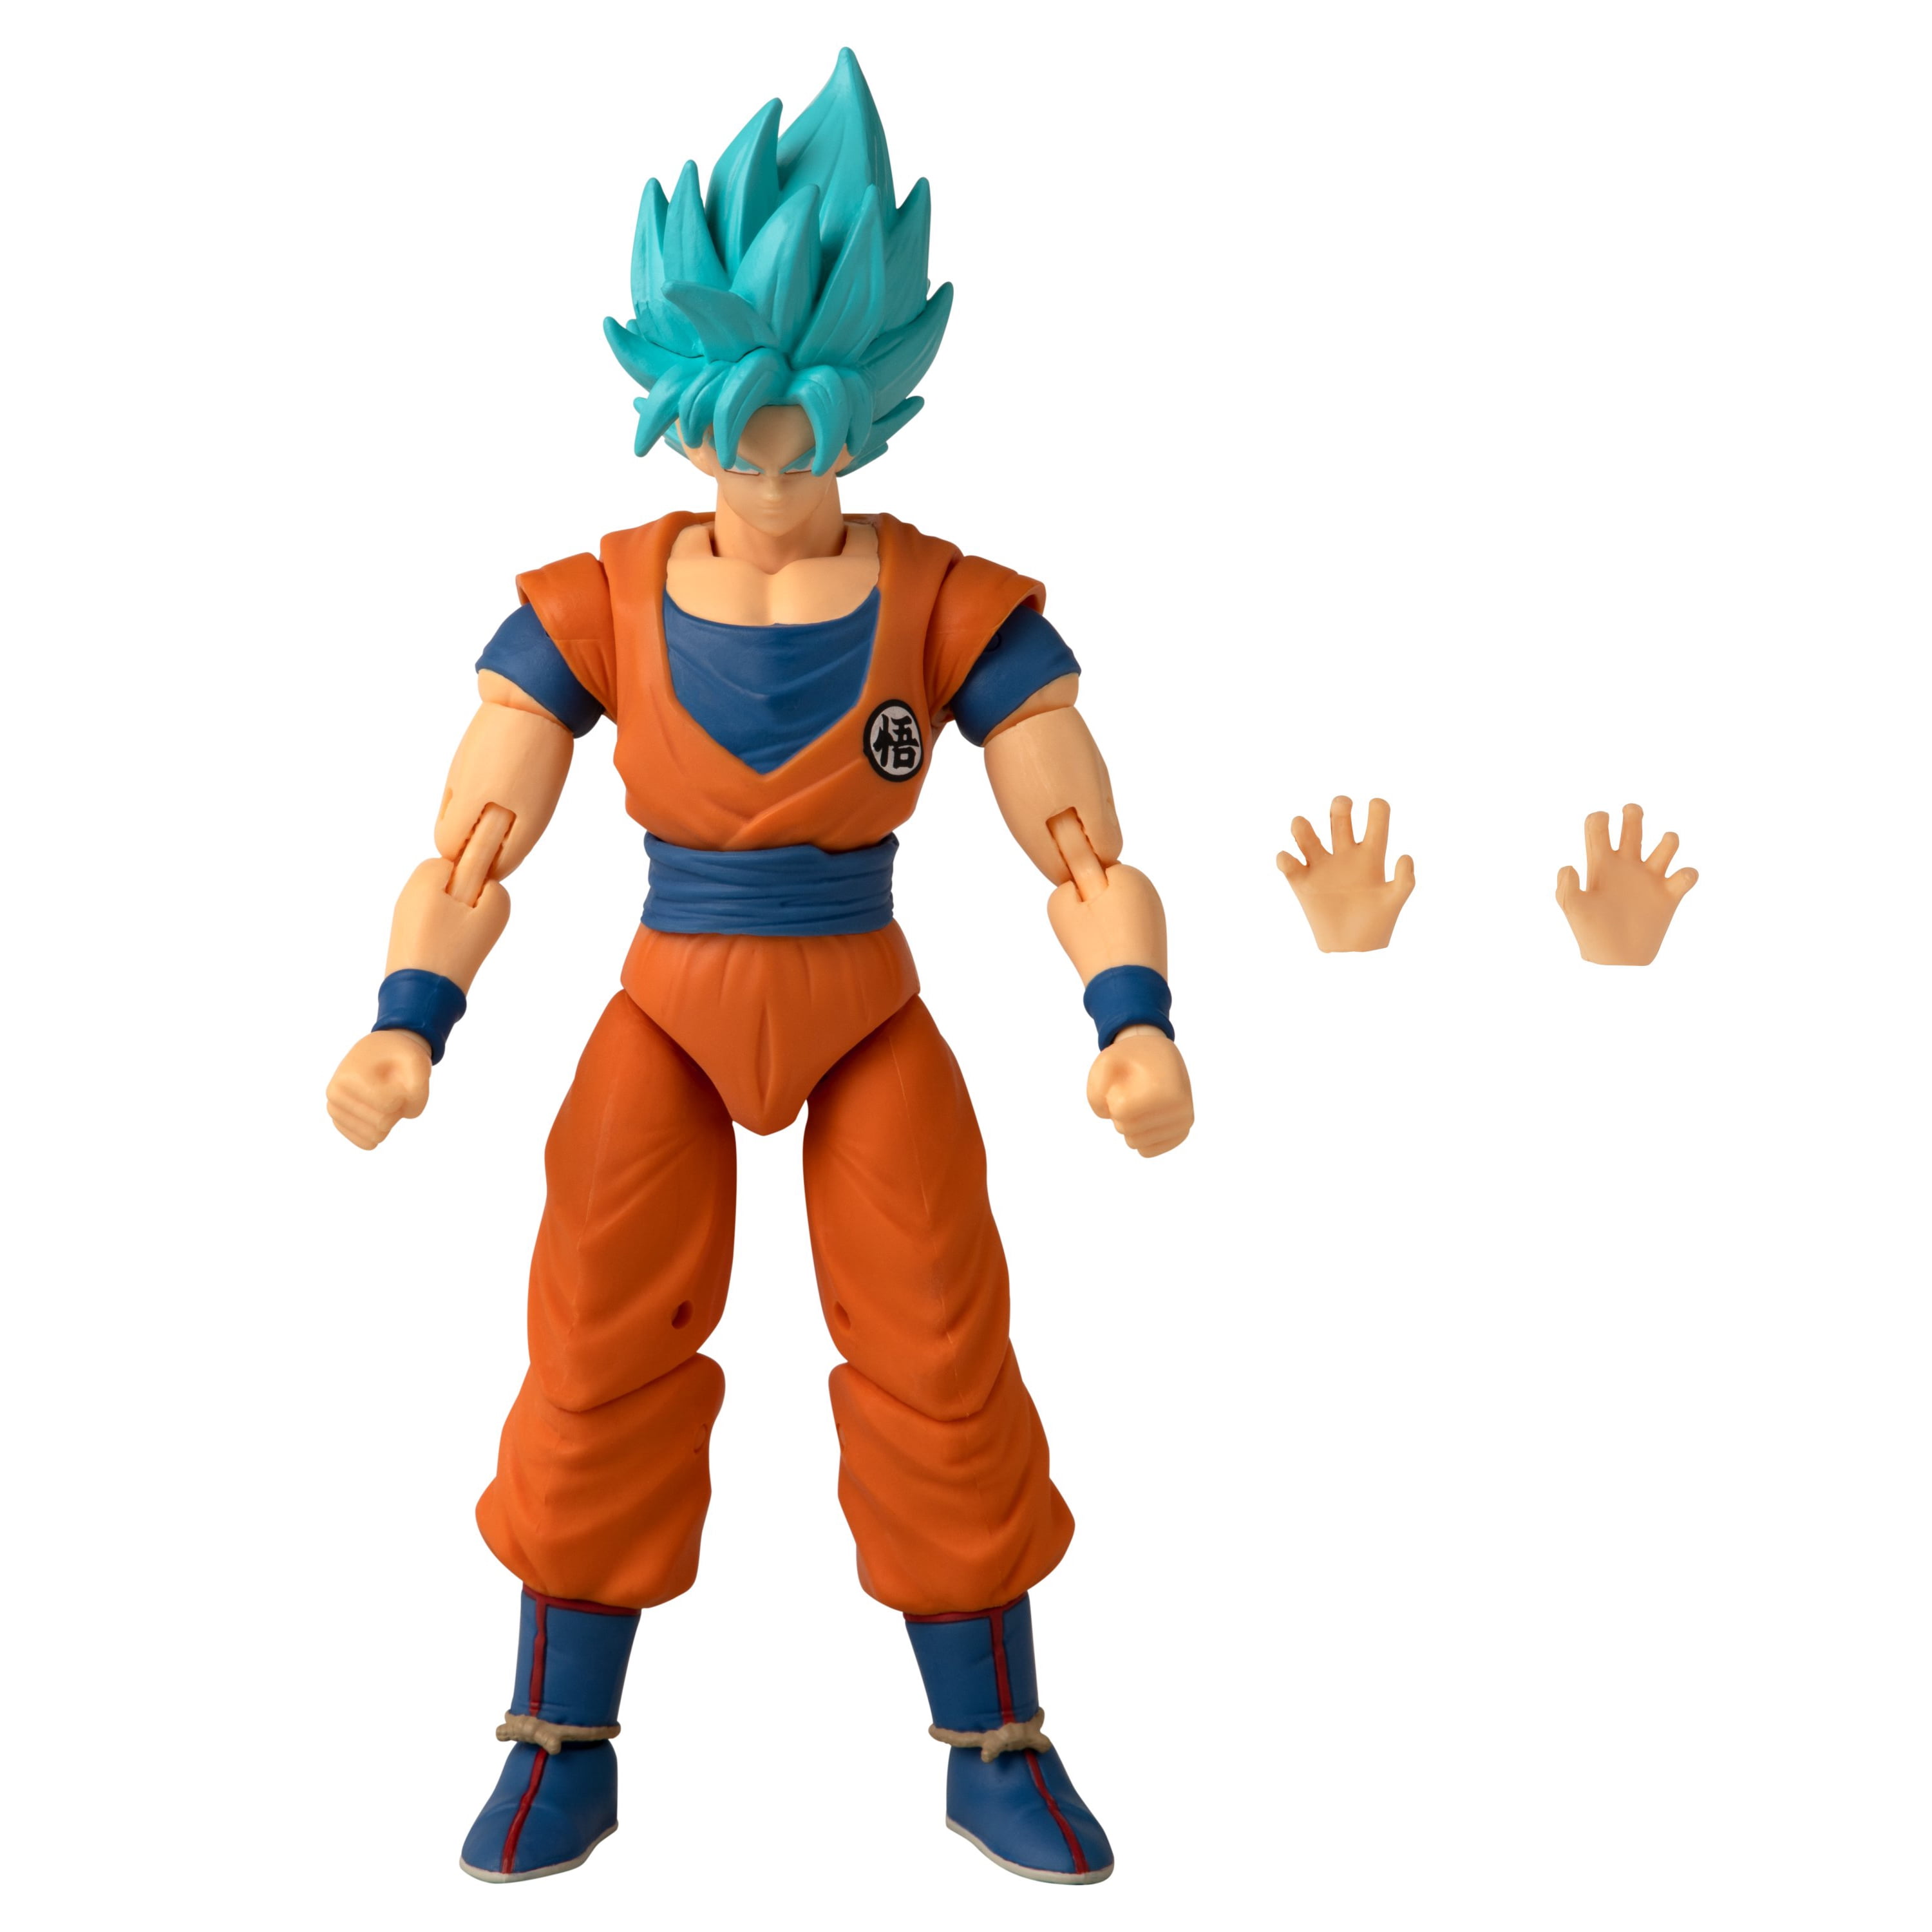 Boneco Articulado Colecionavel Action figure Funko Pop Universo de Dragon  Ball Super Goku ssj Blue 2 em Promoção na Americanas